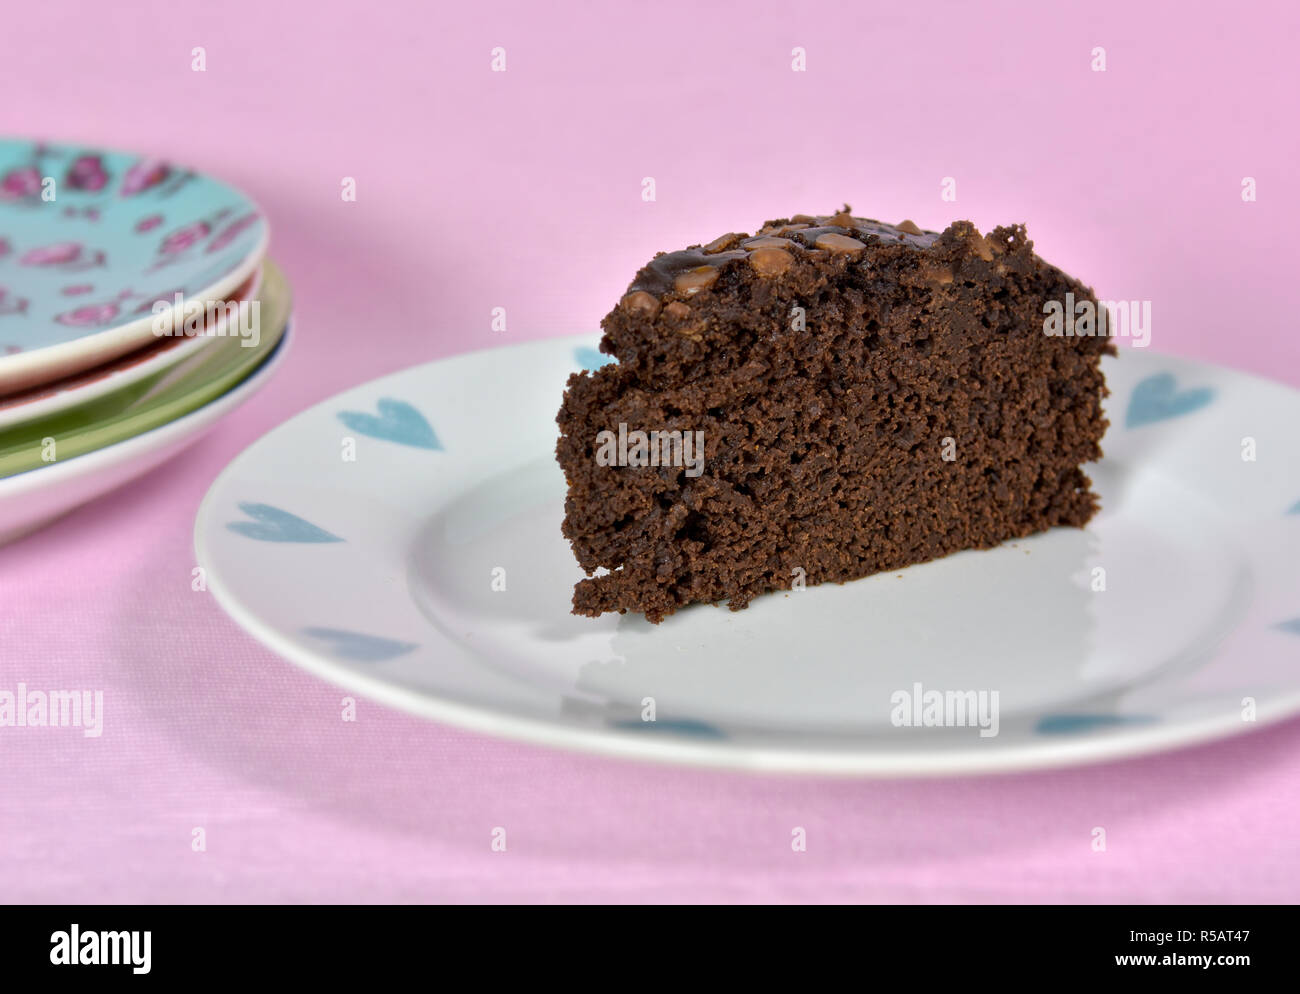 Moist Schokolade Kuchen auf ziemlich Platte ohne Eier und mit Pflanzenöl statt Butter gemacht. Vor einem rosa Hintergrund. Stockfoto